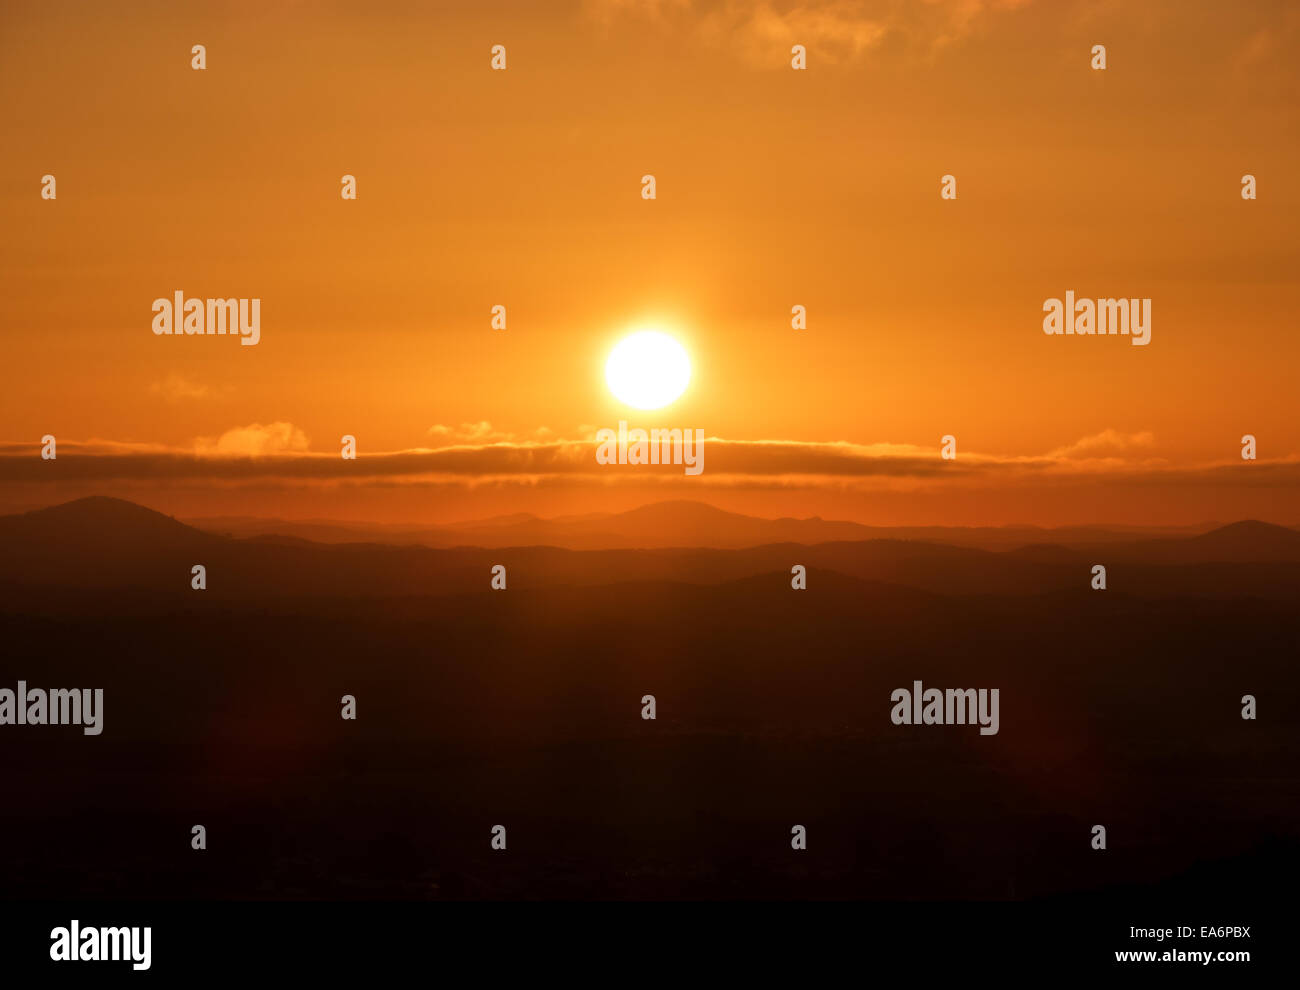 Sunrise Orange Himmelshintergrund am Morgen mit Wolken Stockfoto